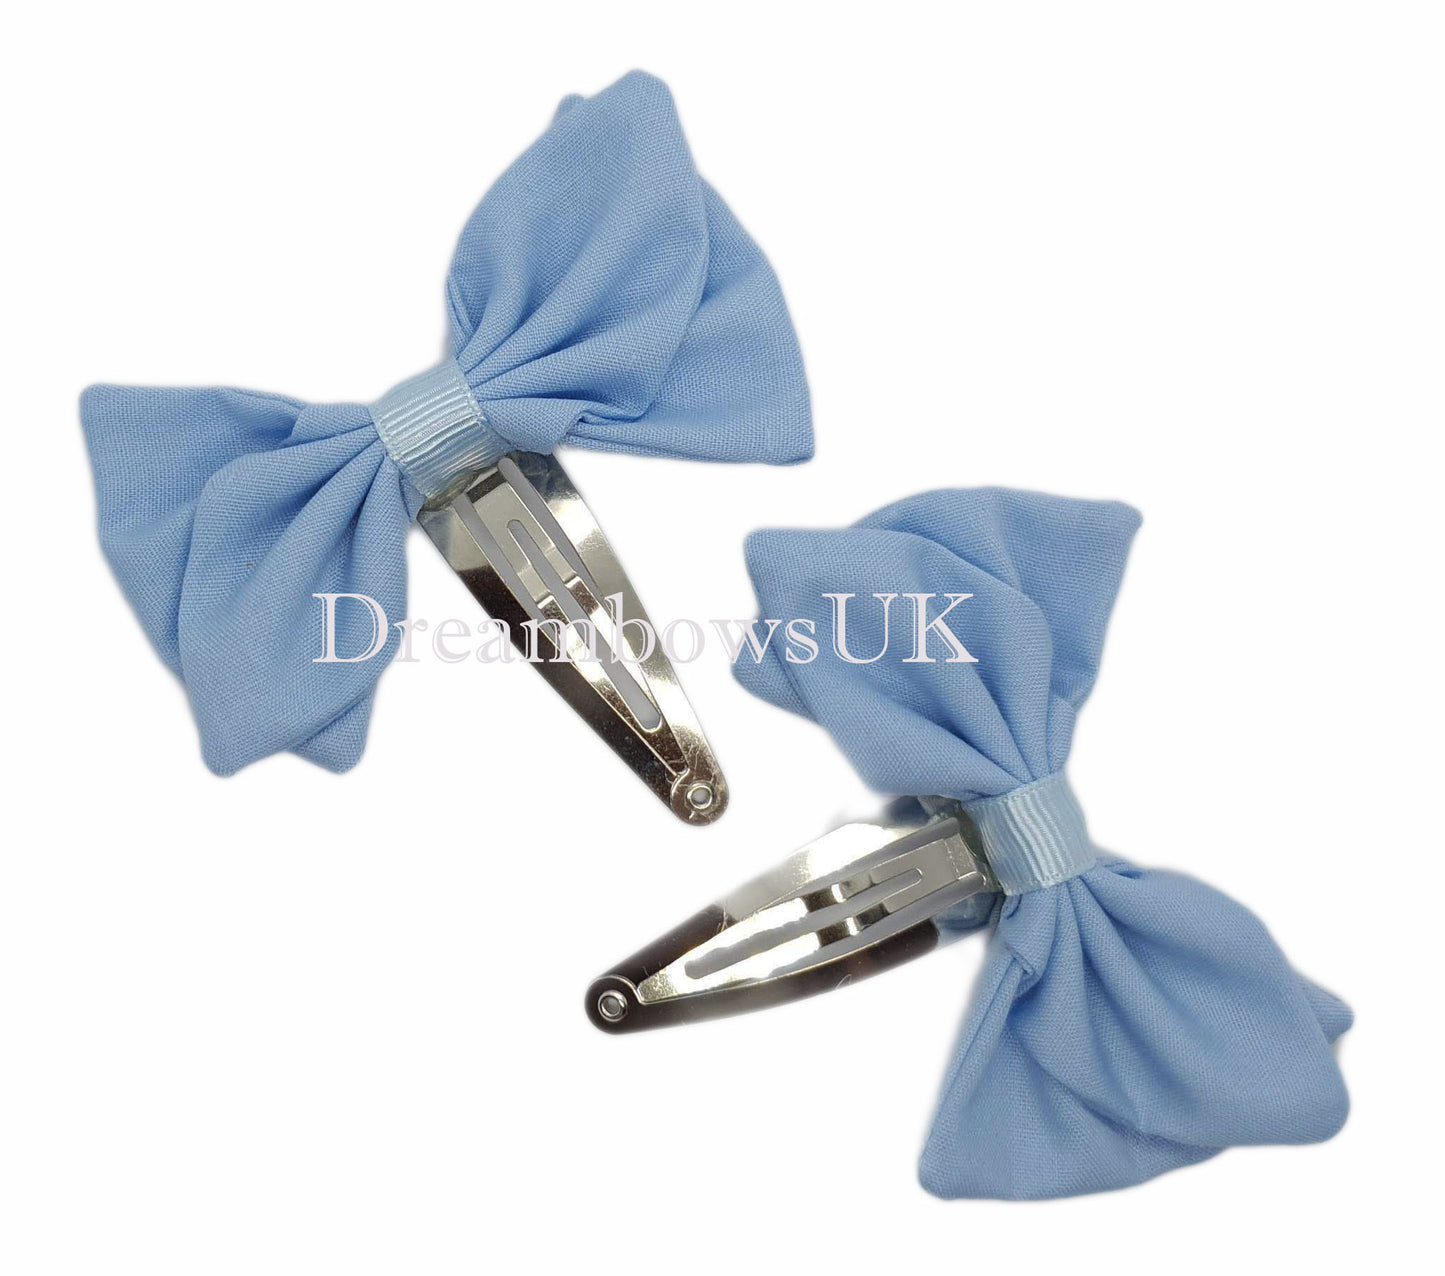 2x Baby blue fabric hair bows